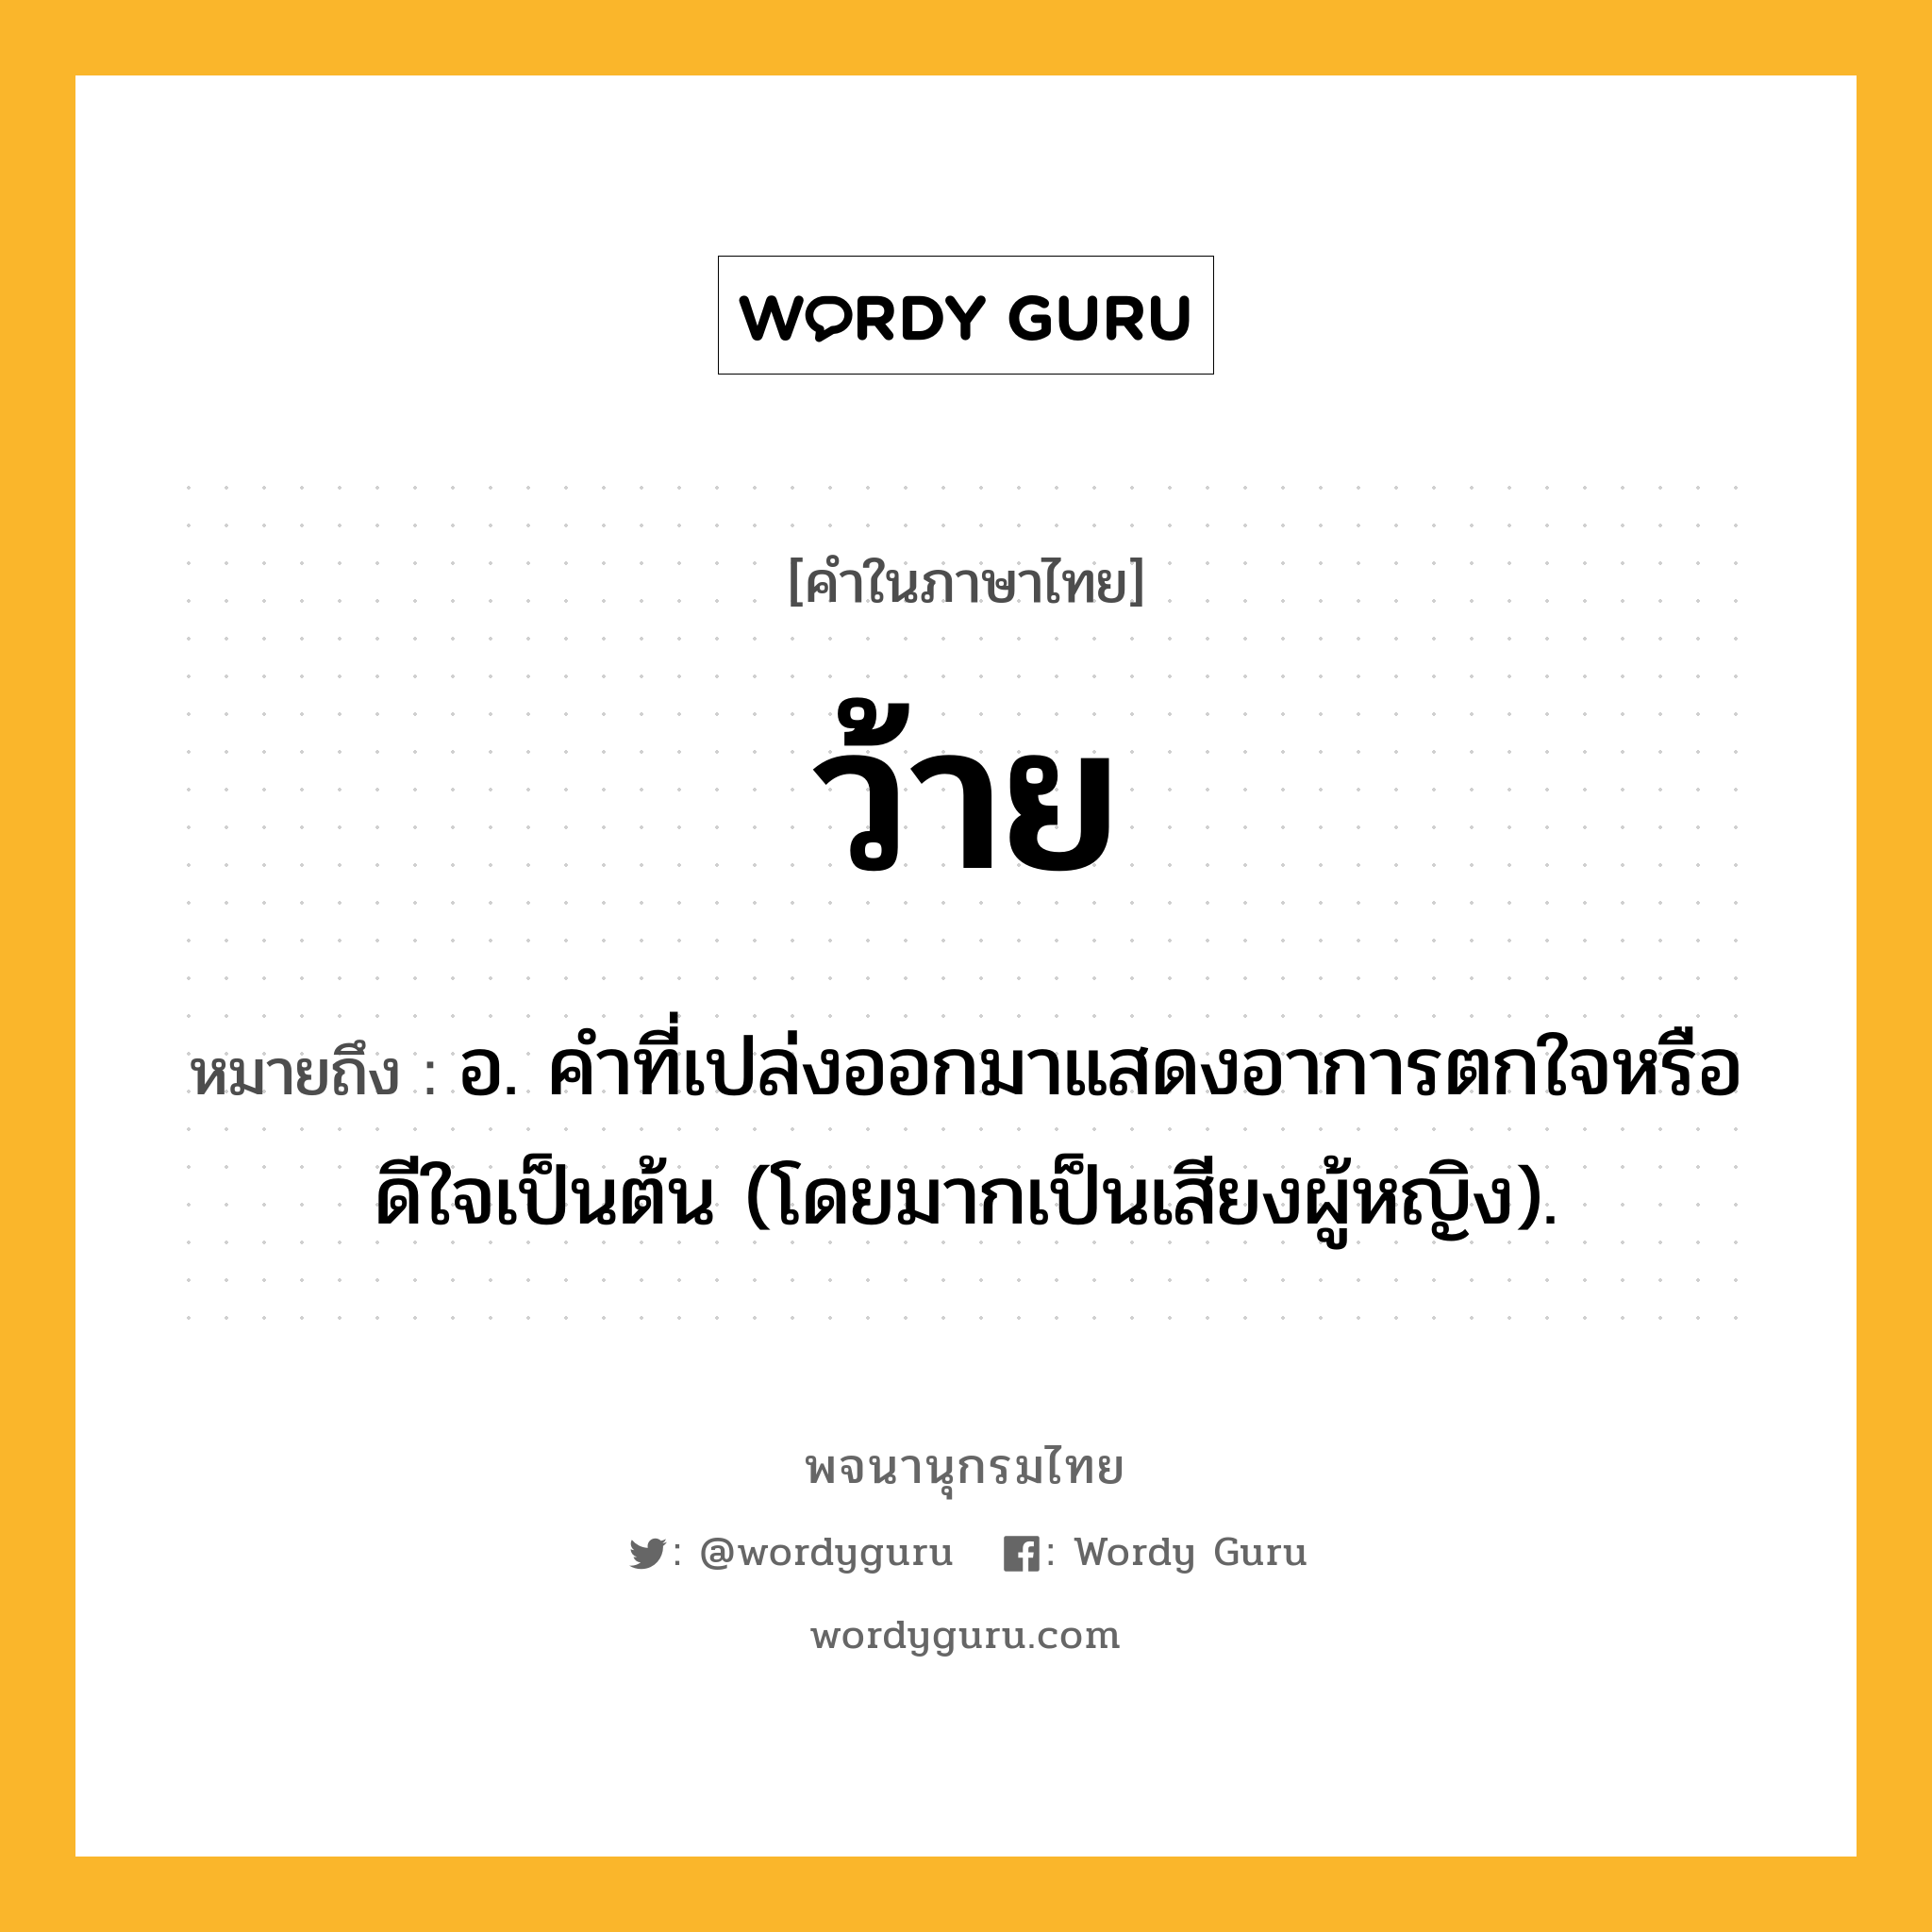 ว้าย หมายถึงอะไร?, คำในภาษาไทย ว้าย หมายถึง อ. คําที่เปล่งออกมาแสดงอาการตกใจหรือดีใจเป็นต้น (โดยมากเป็นเสียงผู้หญิง).